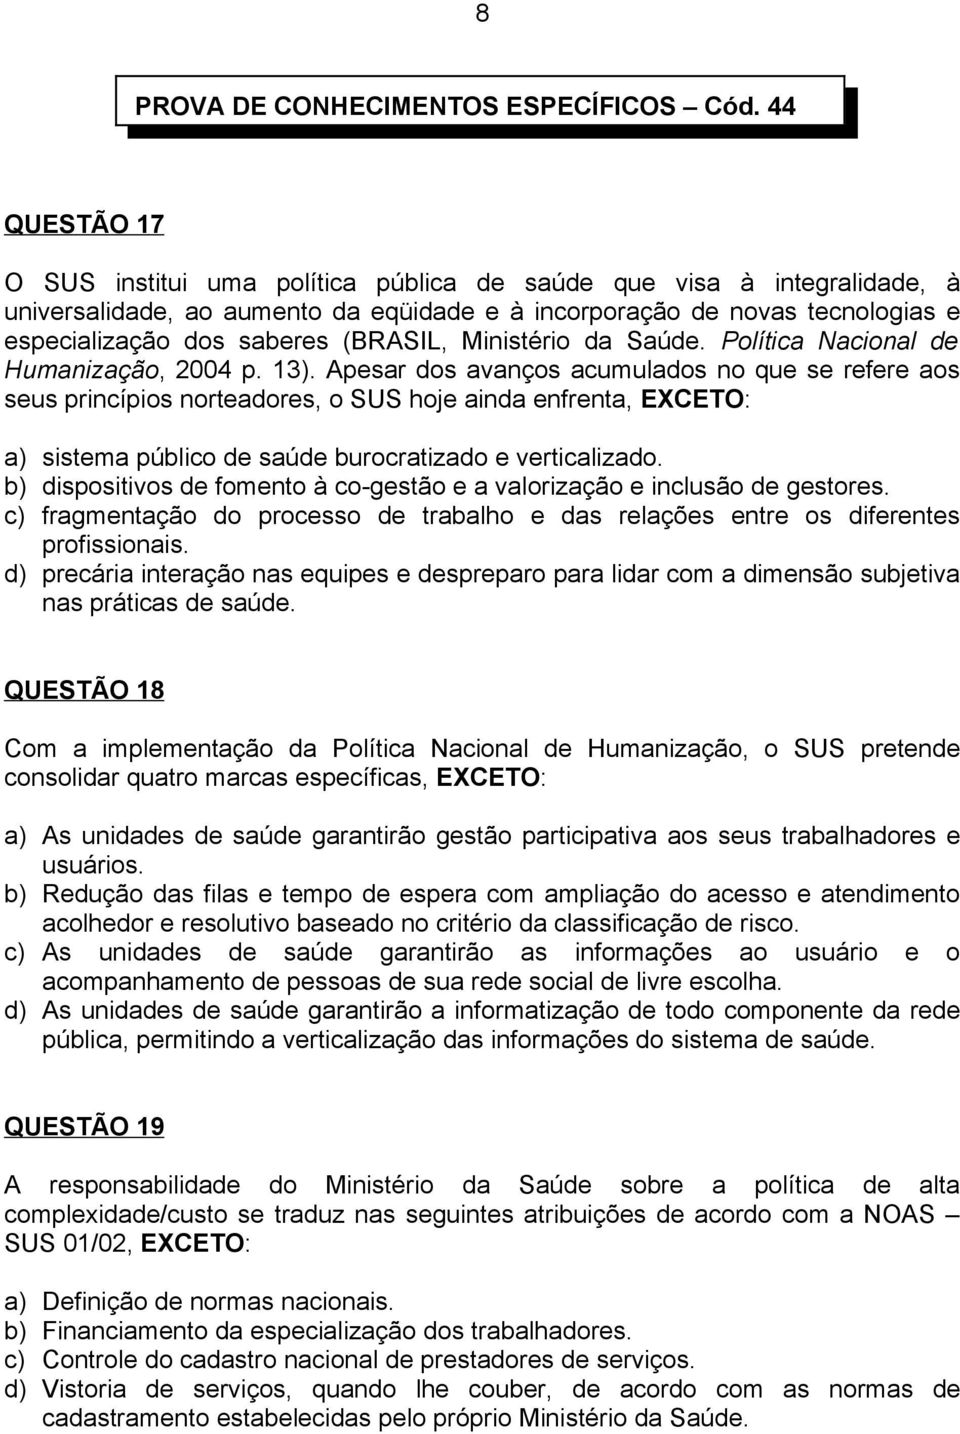 (BRASIL, Ministério da Saúde. Política Nacional de Humanização, 2004 p. 13).